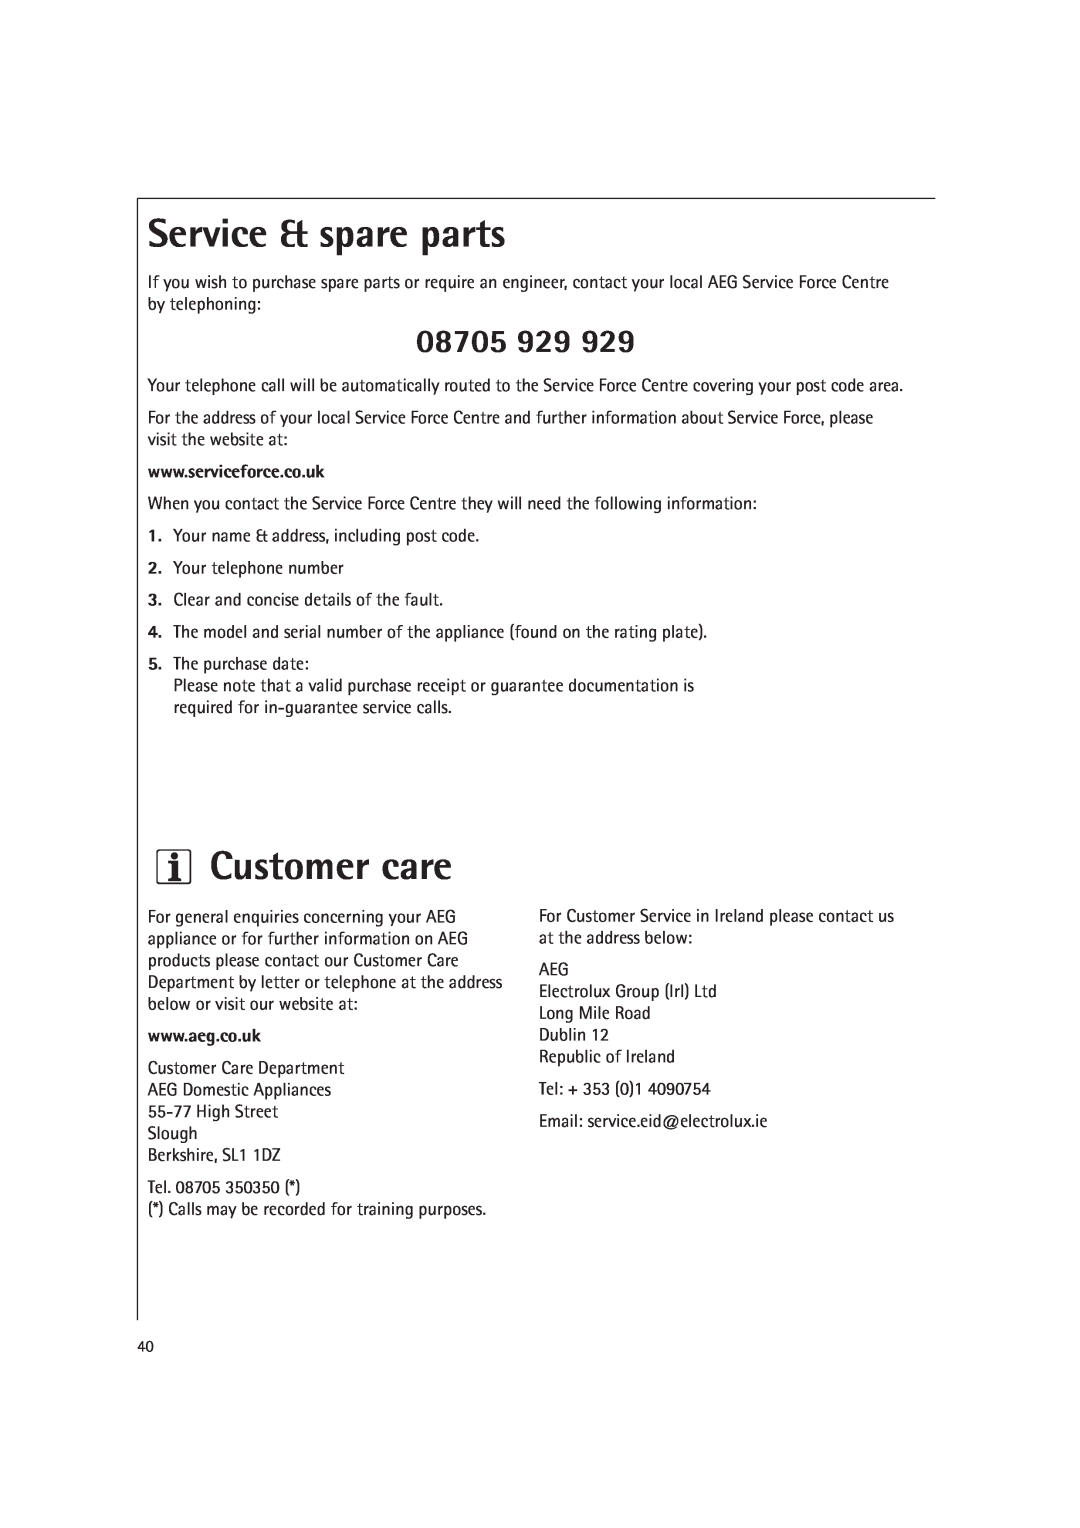 AEG MCD1761E, MCD1751E manual Service & spare parts, Customer care, 08705 